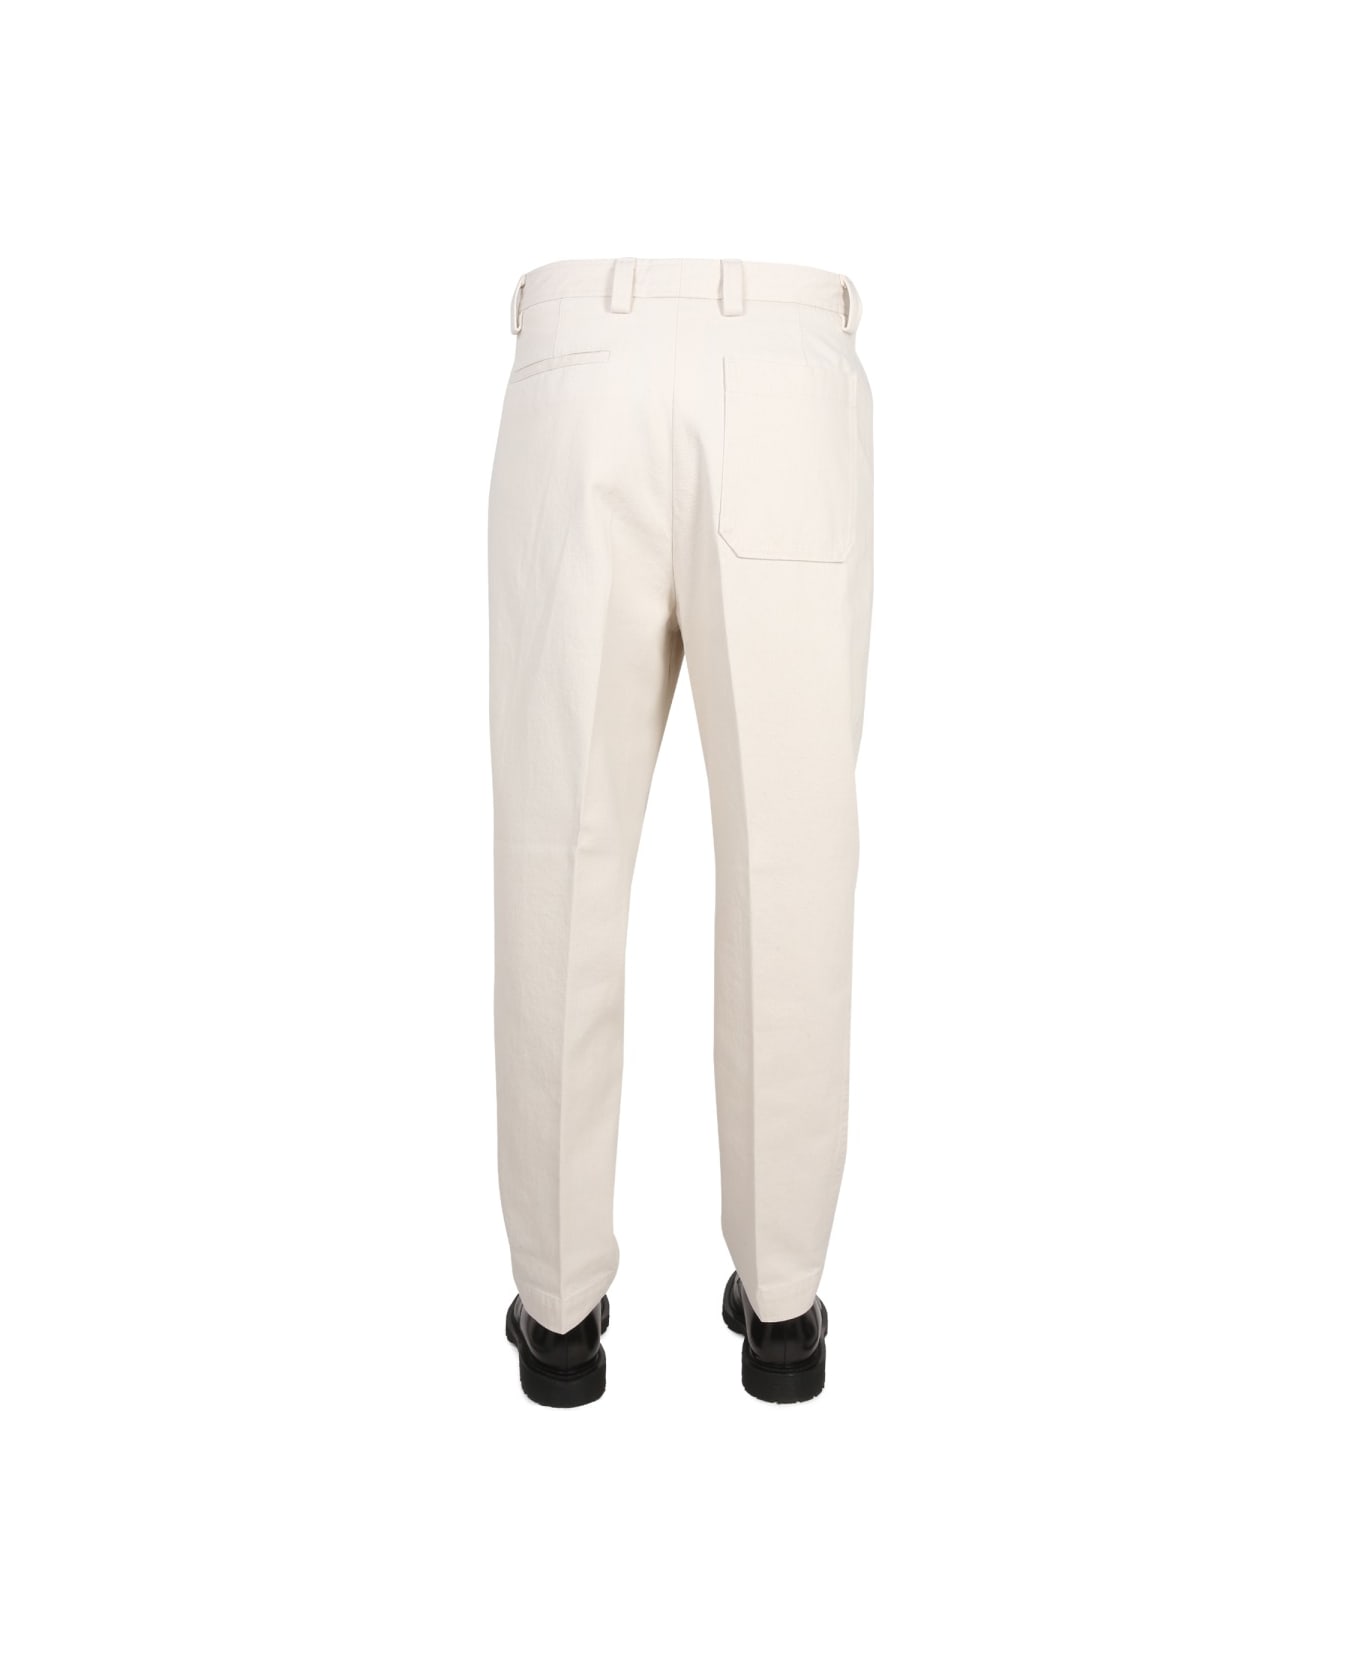 Zegna Bull Denim Jeans - WHITE